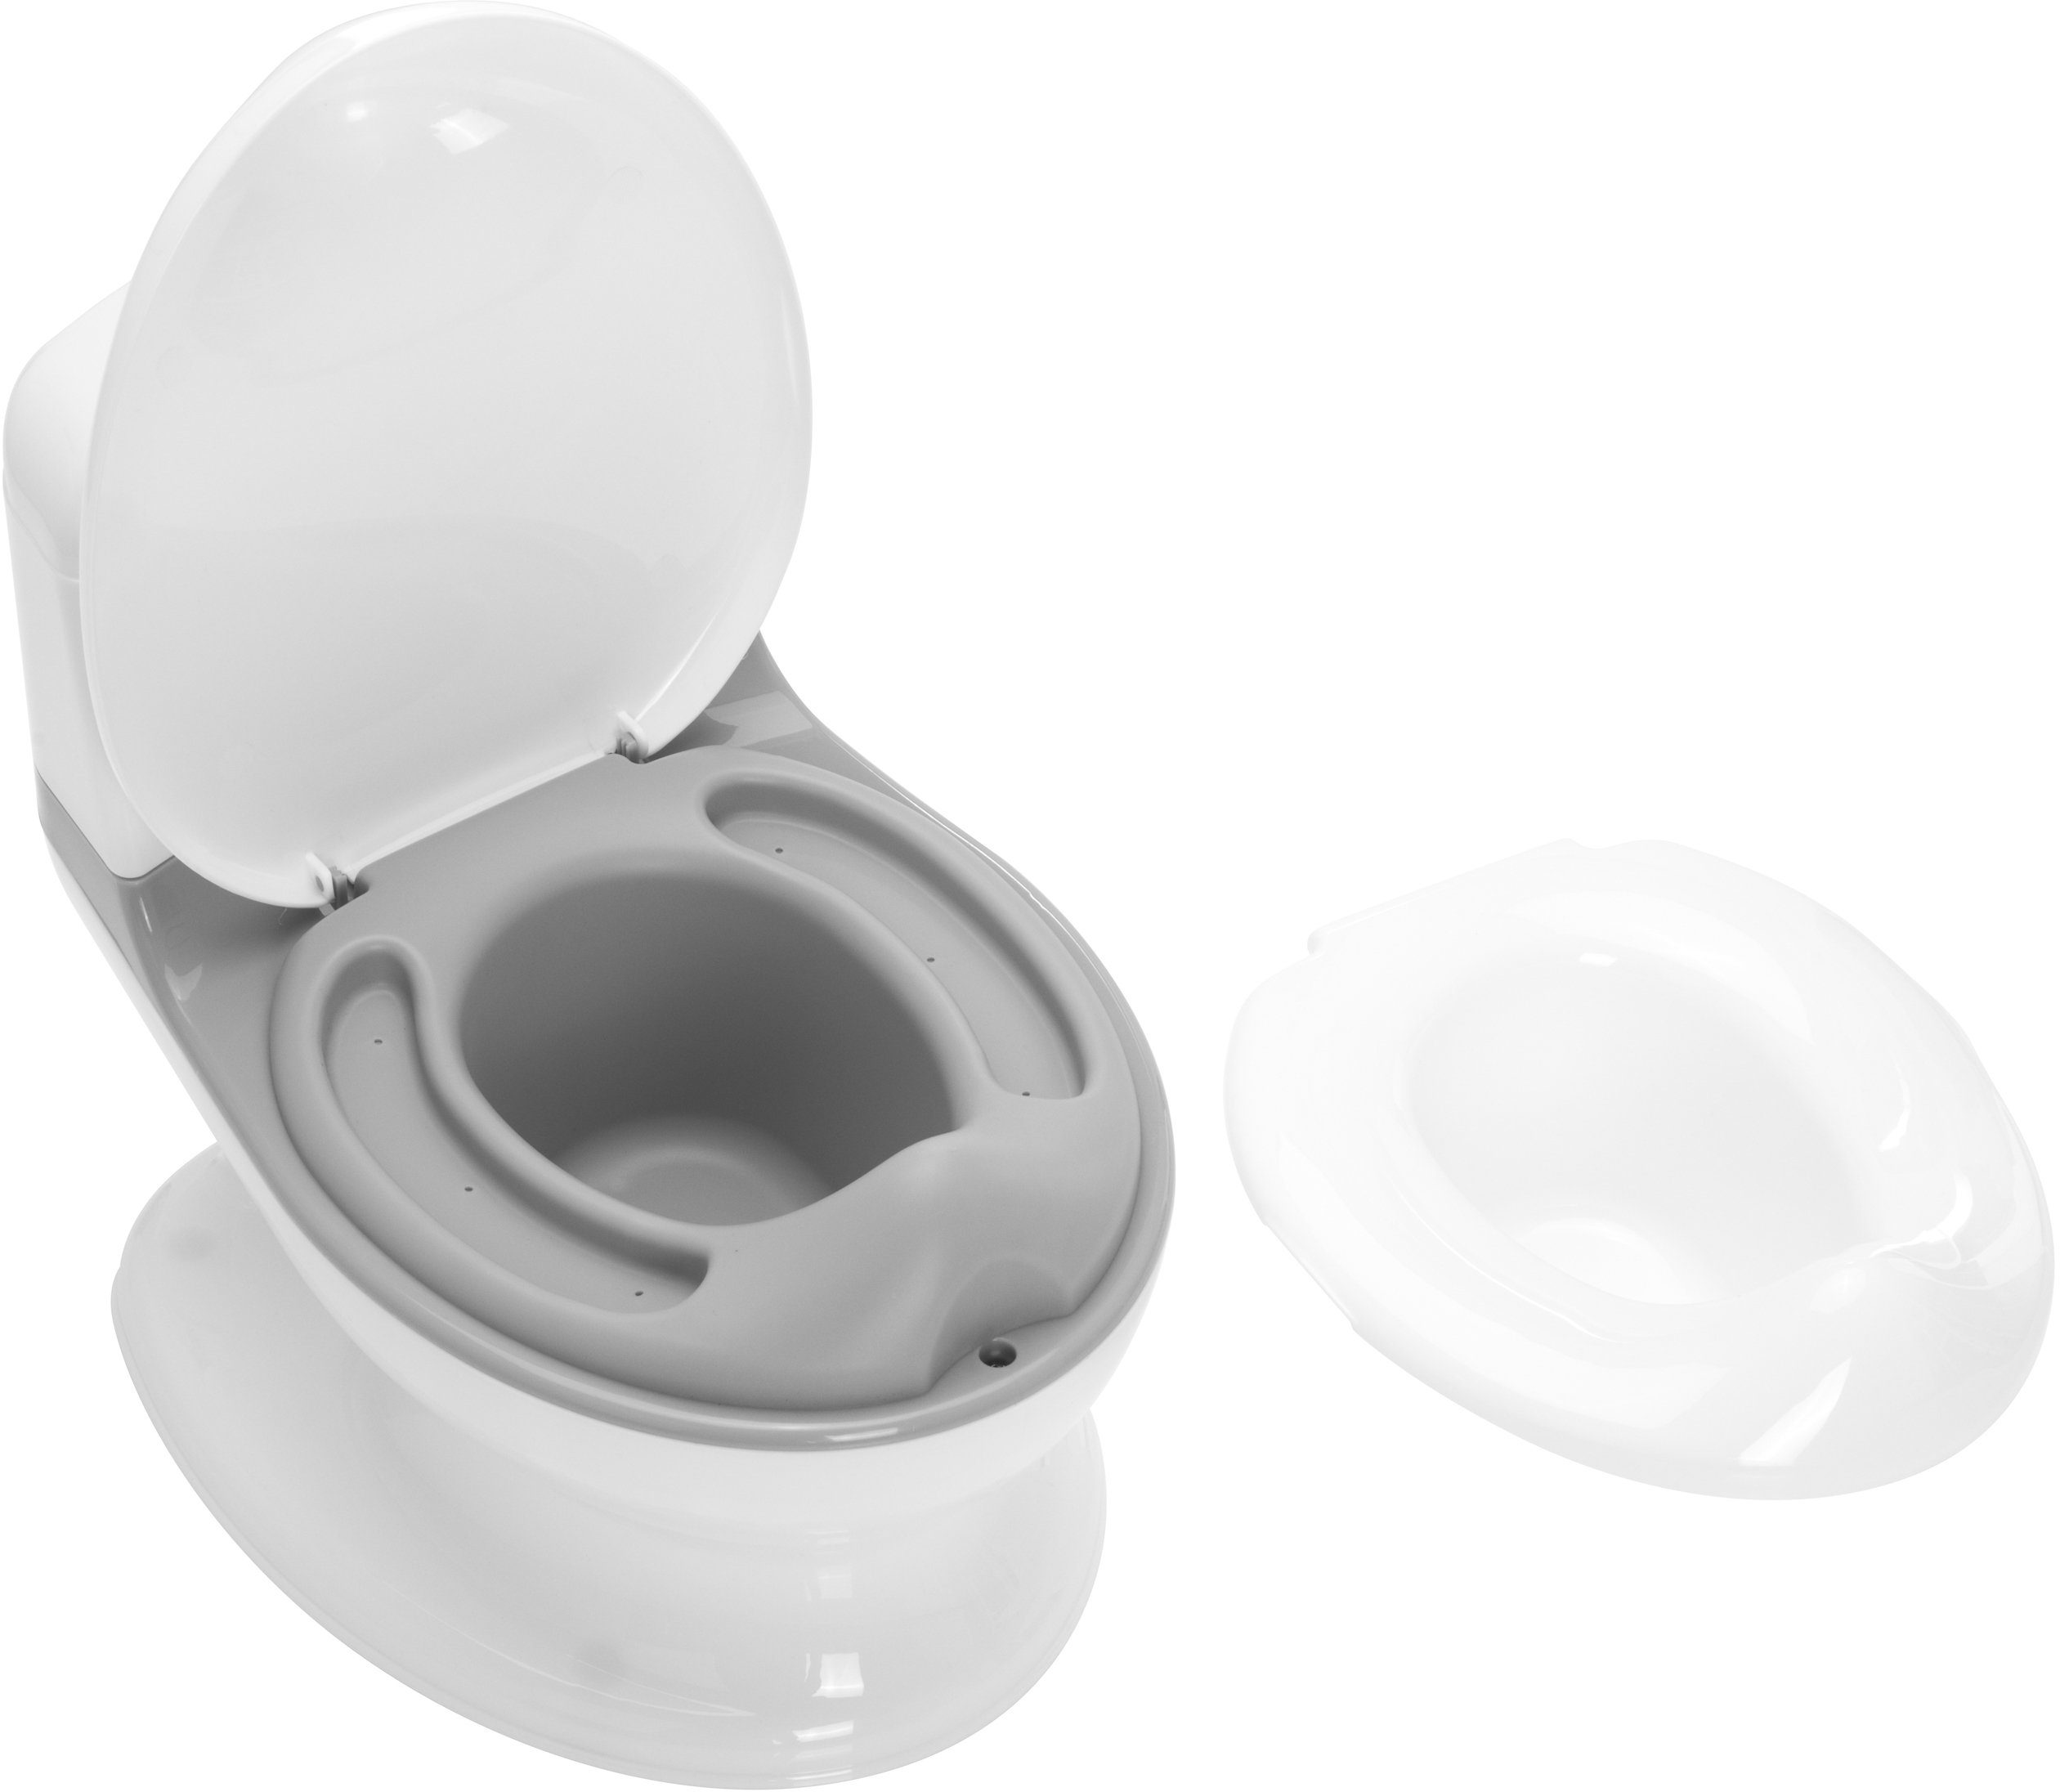 inkl. Fillikid Töpfchen Mini weiß/grau, Toilette, Lichteffekte und Sound-